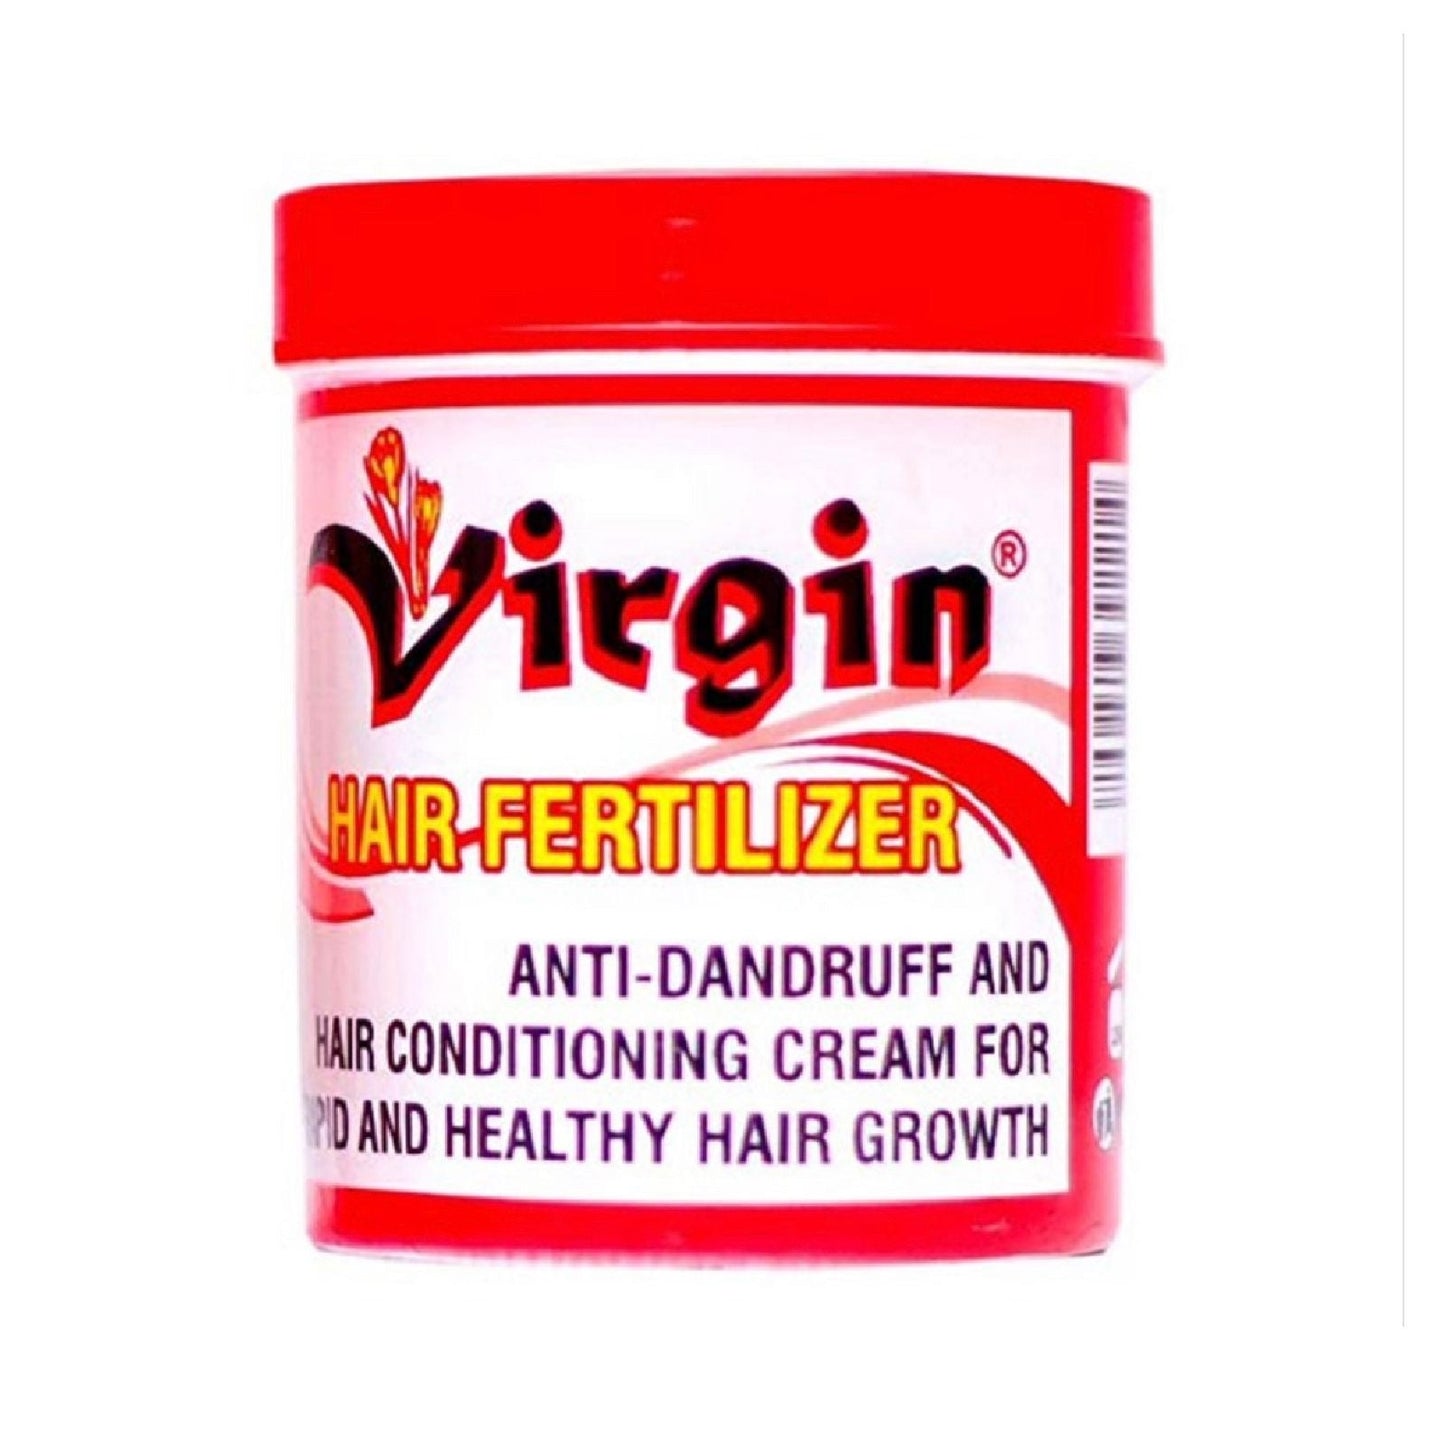 Virgin Hair Fertilizer 200g